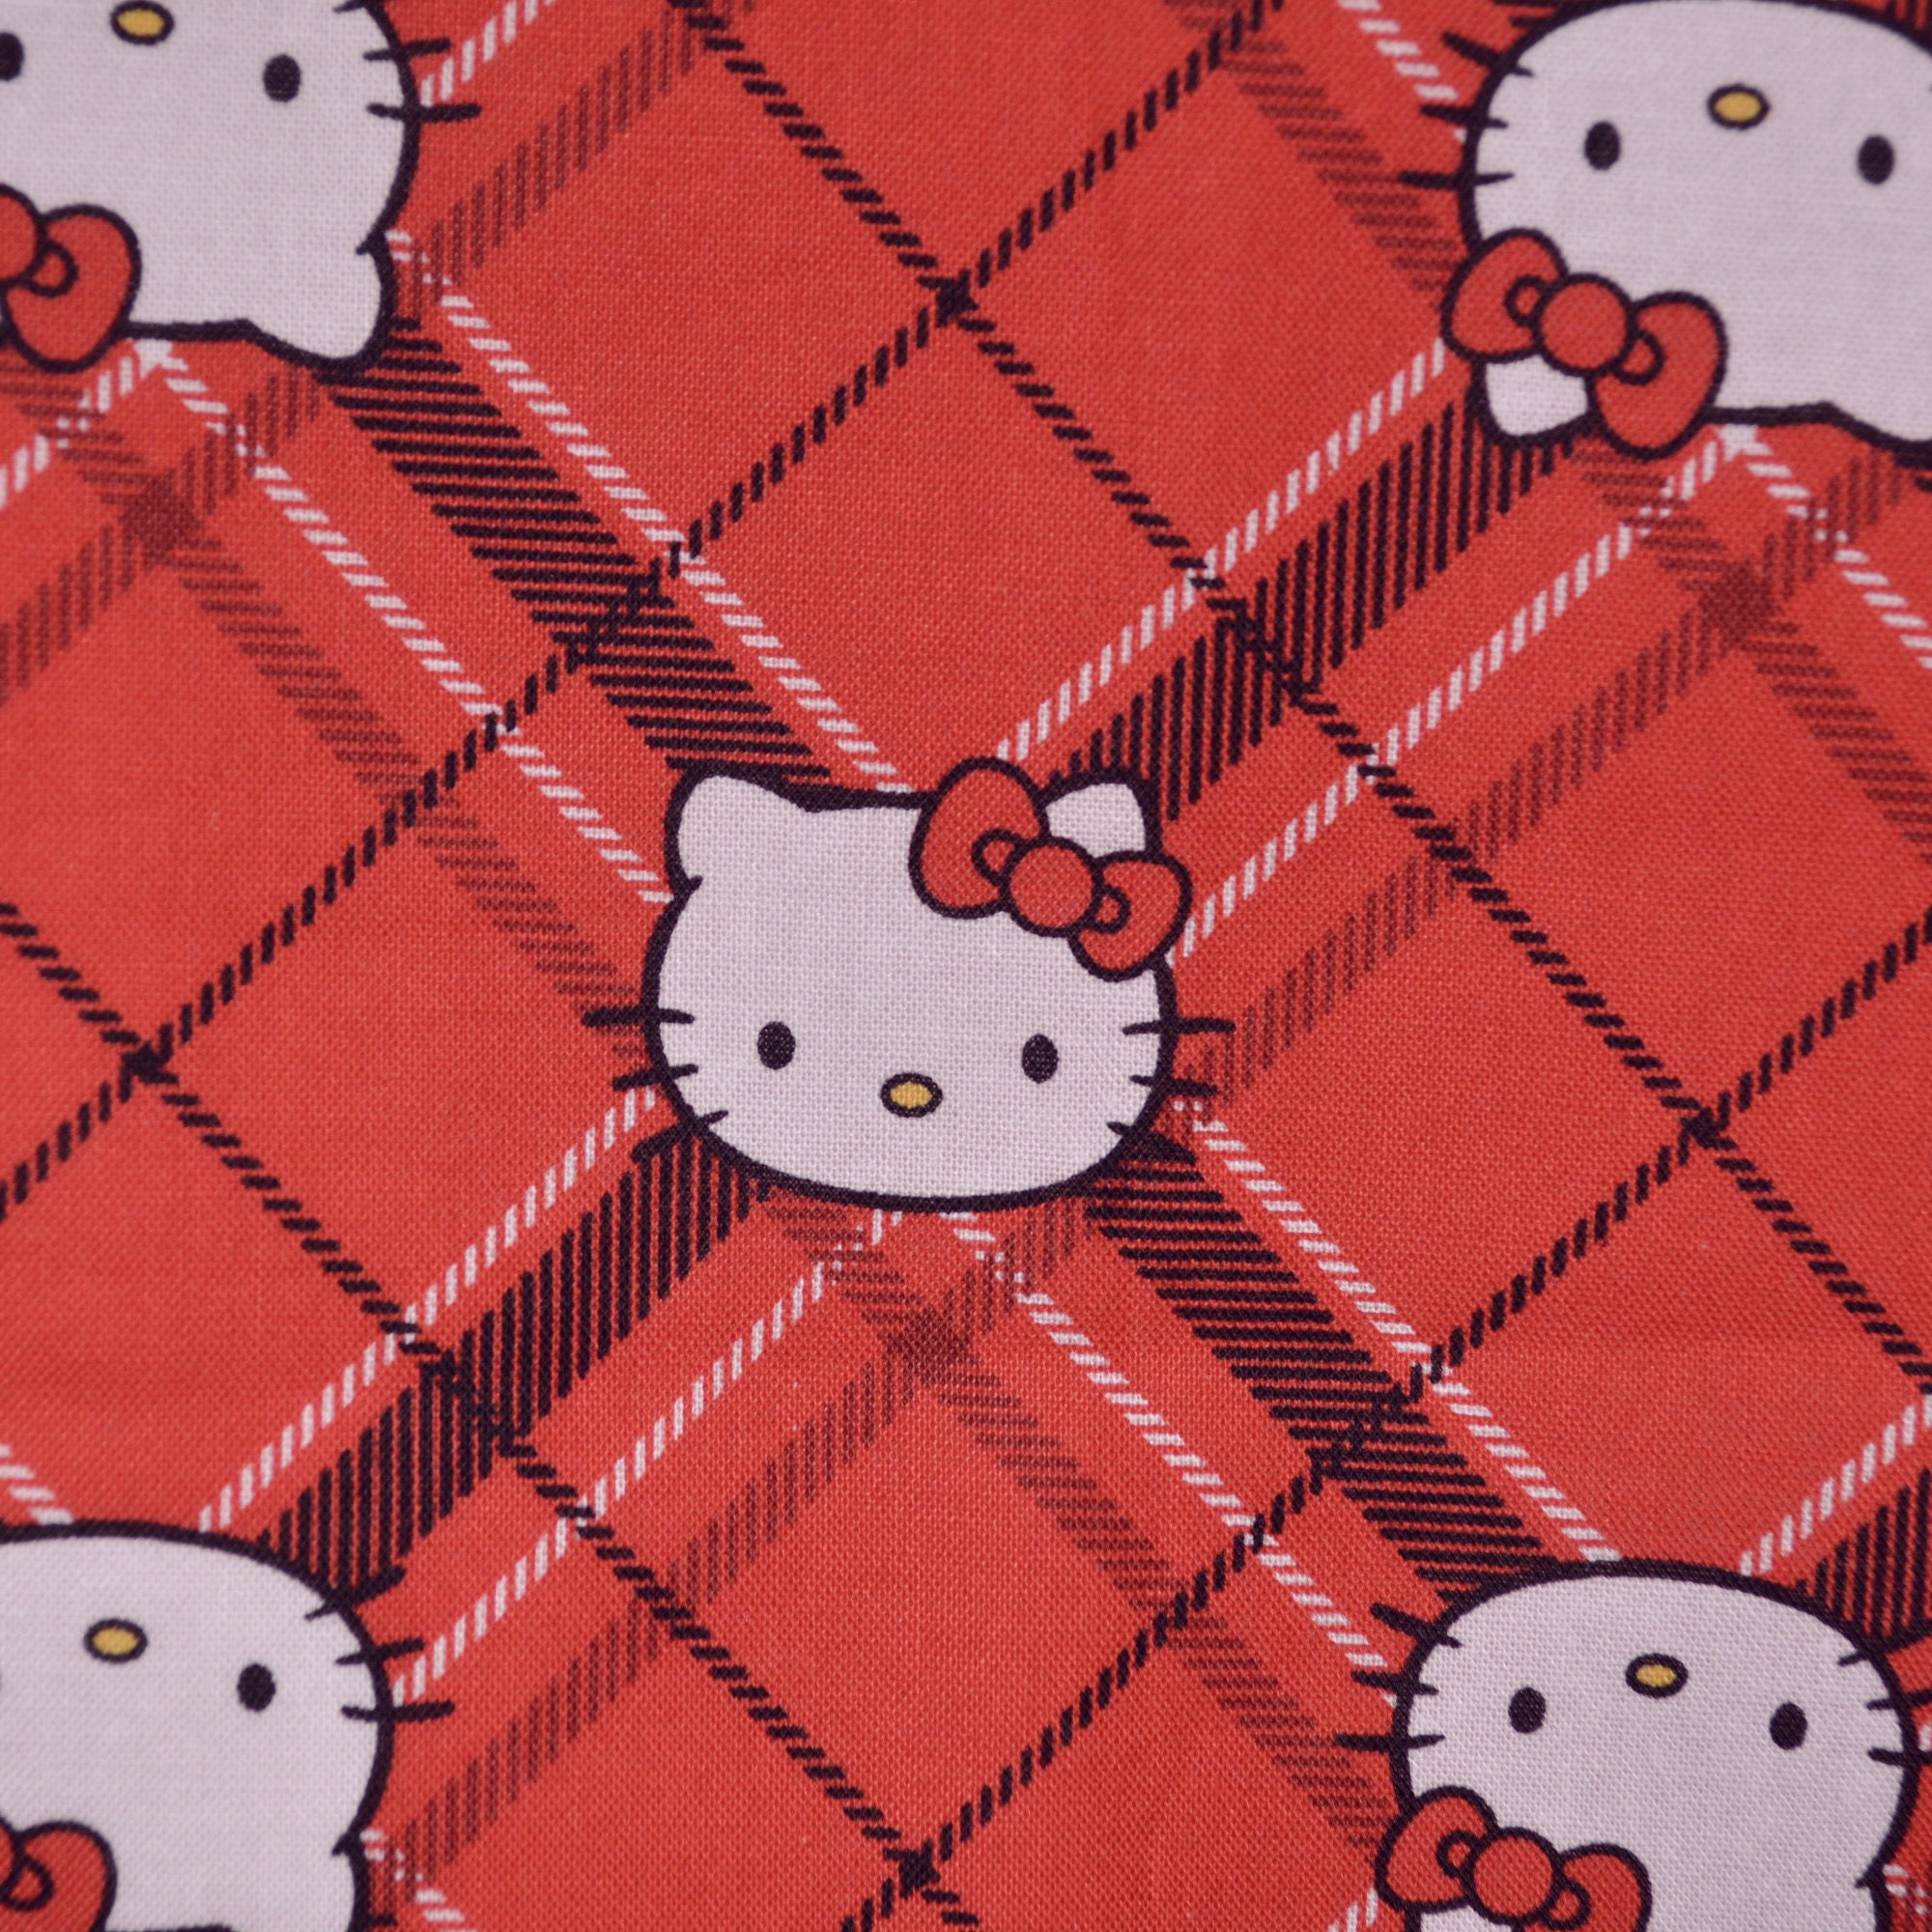 Nếu bạn yêu thích Hello Kitty, bạn sẽ yêu thích chất liệu sợi vải màu đỏ với họa tiết Hello Kitty đáng yêu này. Vải sẽ làm cho bất cứ ai cũng muốn chạm vào và giữ, và khi kết hợp với mẫu Hello Kitty, đó thật là một hiện vật độc đáo.